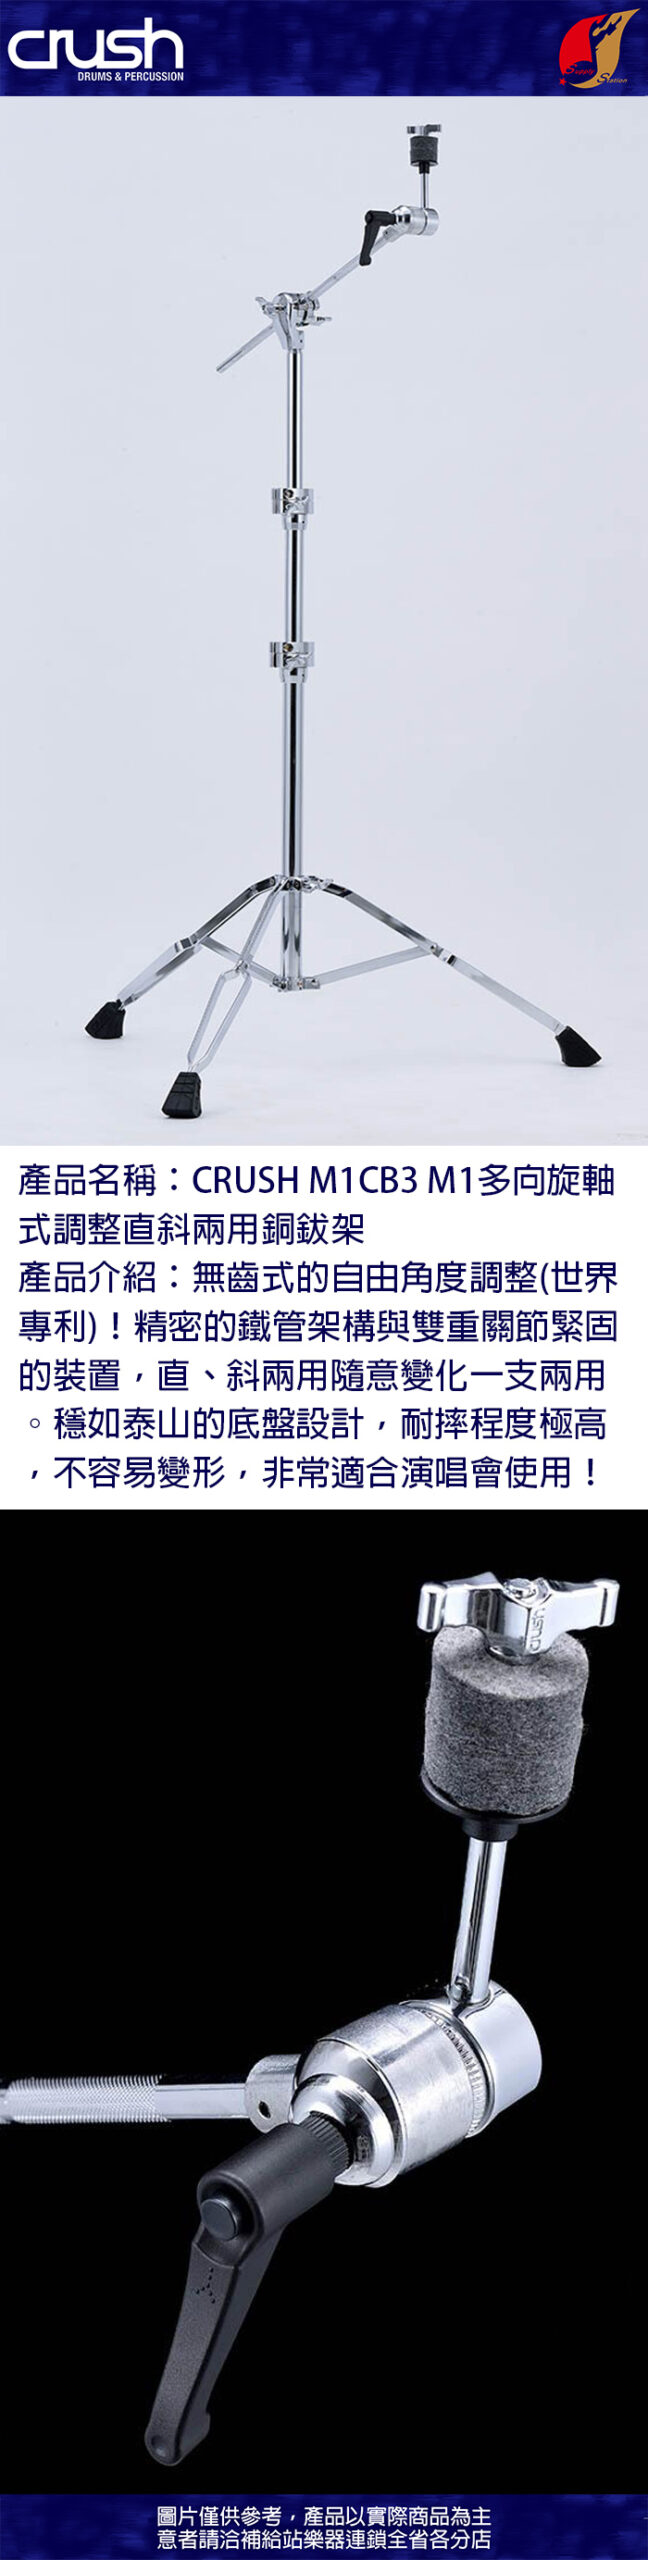 CRUSH M1CB3 M1 多向旋軸式調整直斜兩用銅鈸架